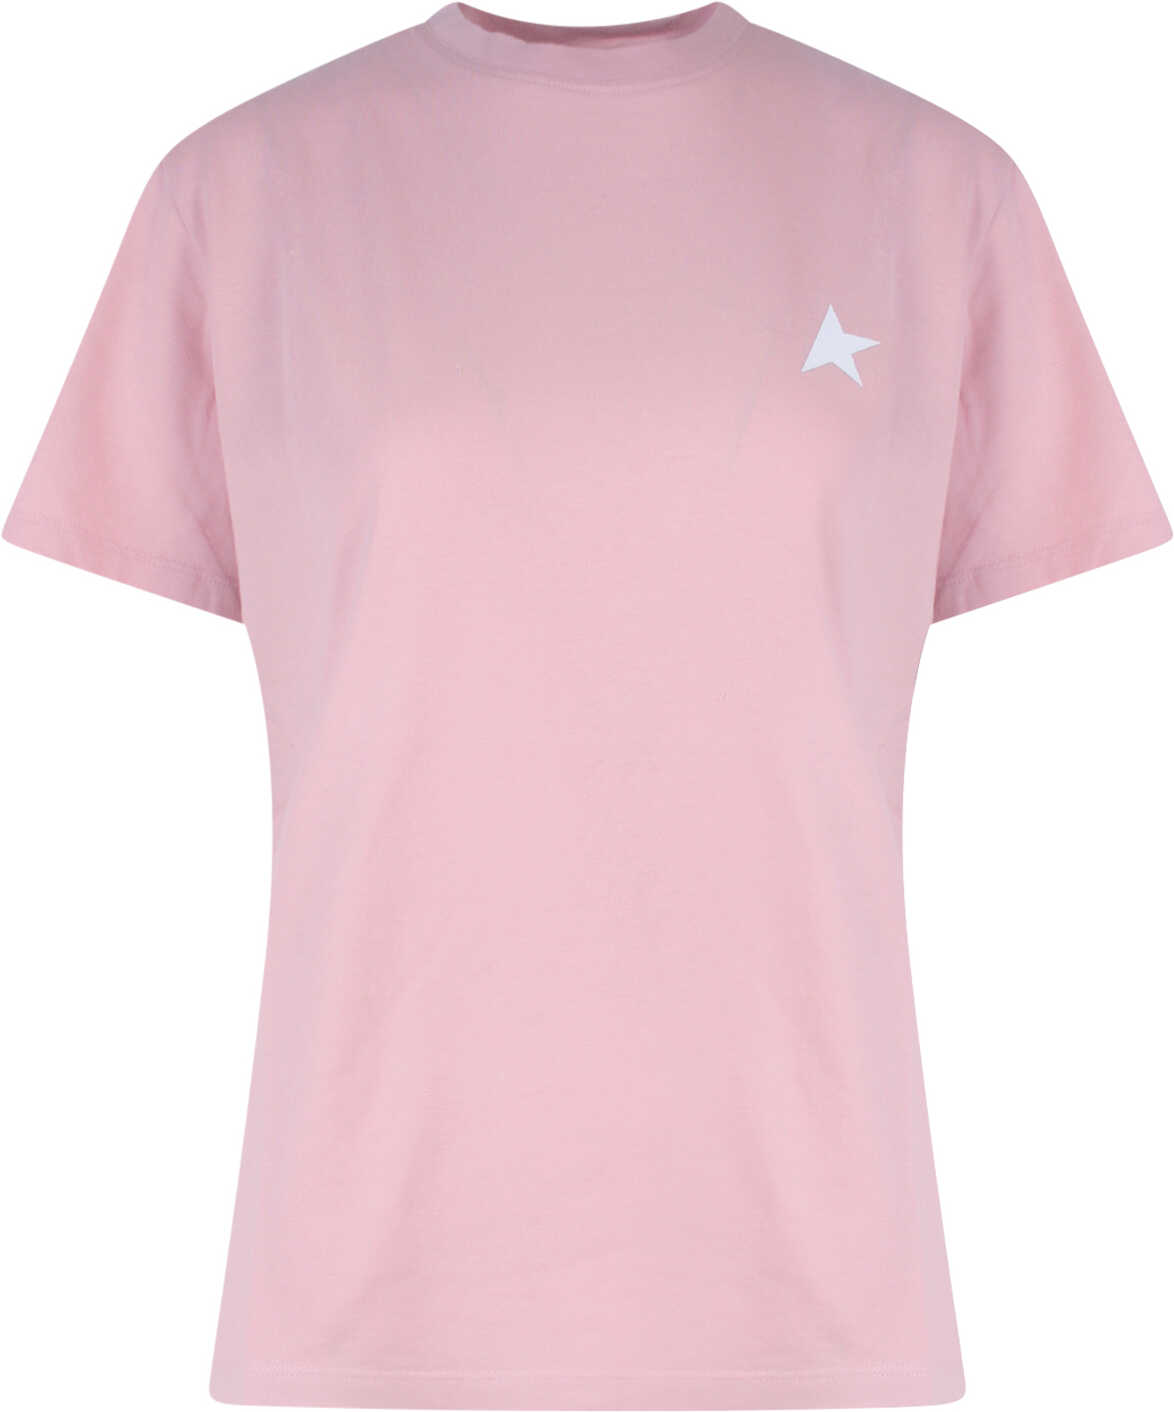 Golden Goose T-Shirt Pink